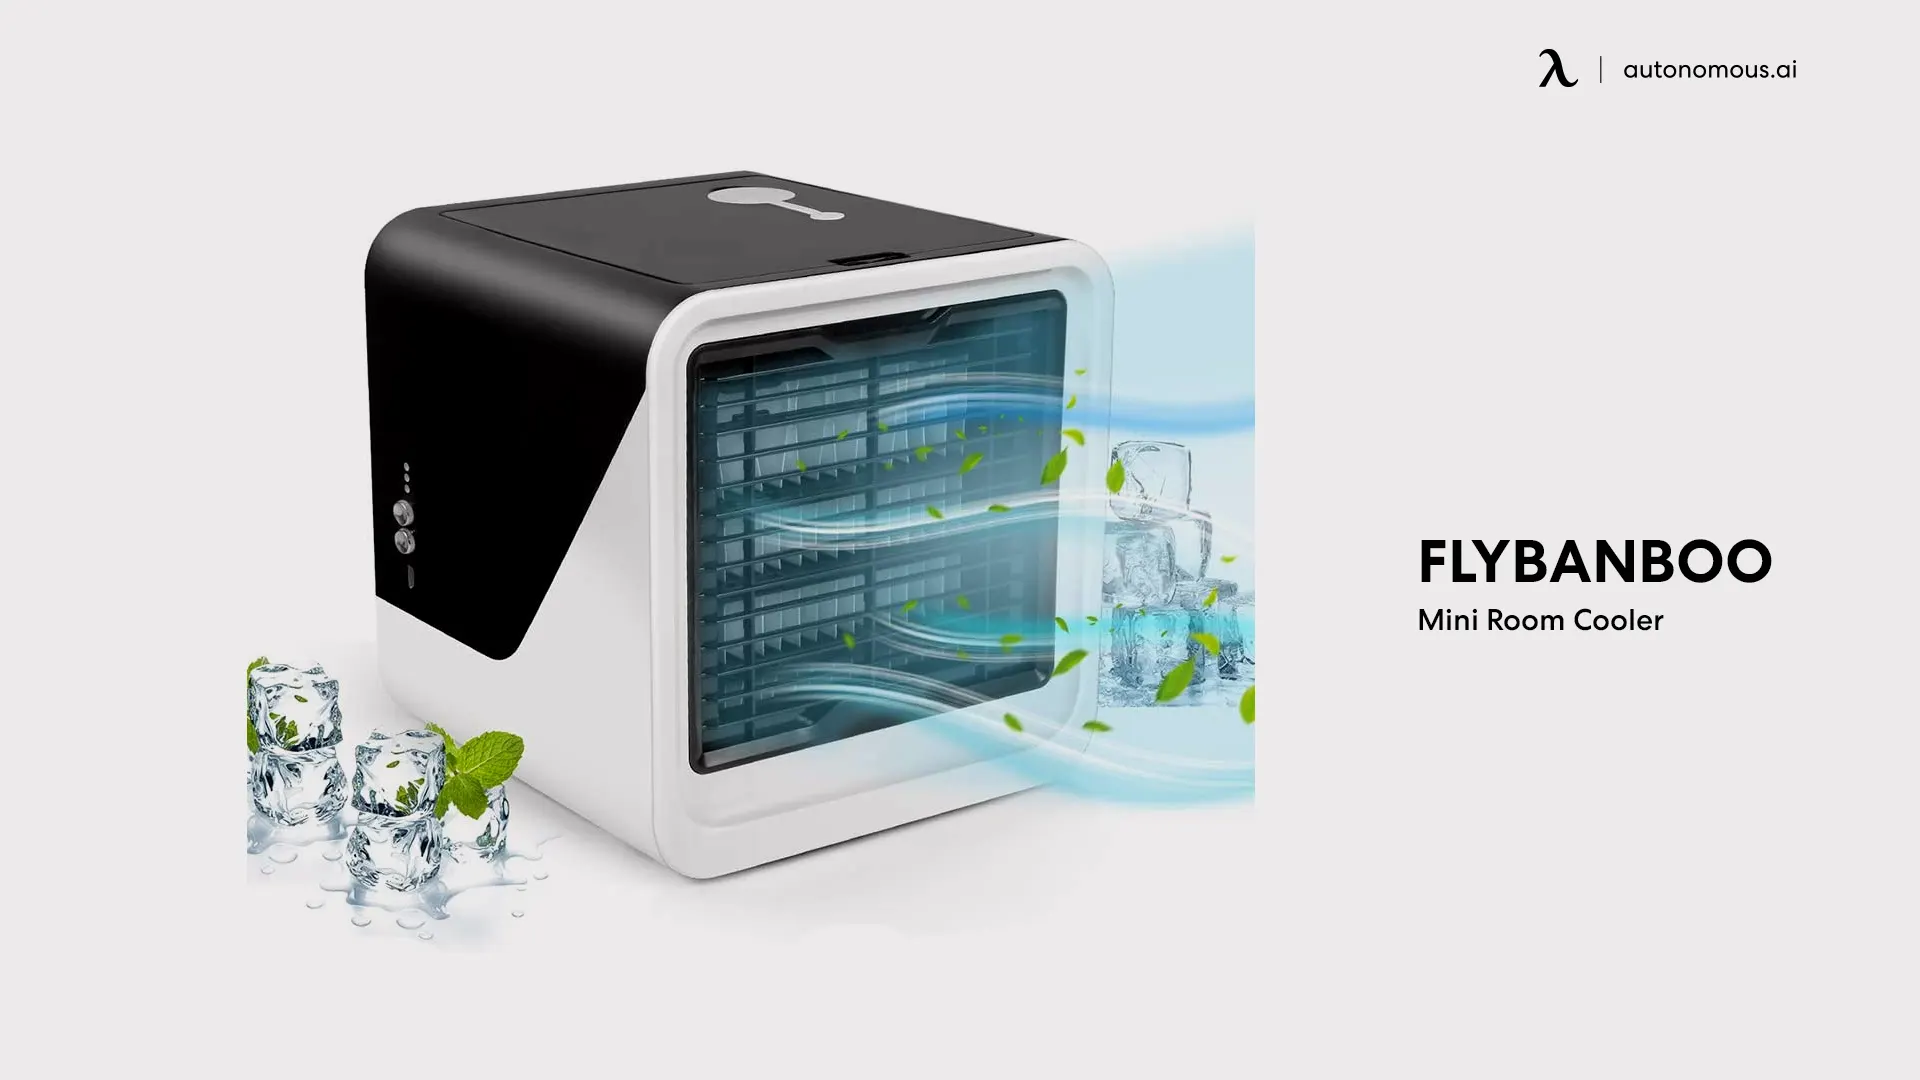 FlyBanboo Mini Room Cooler